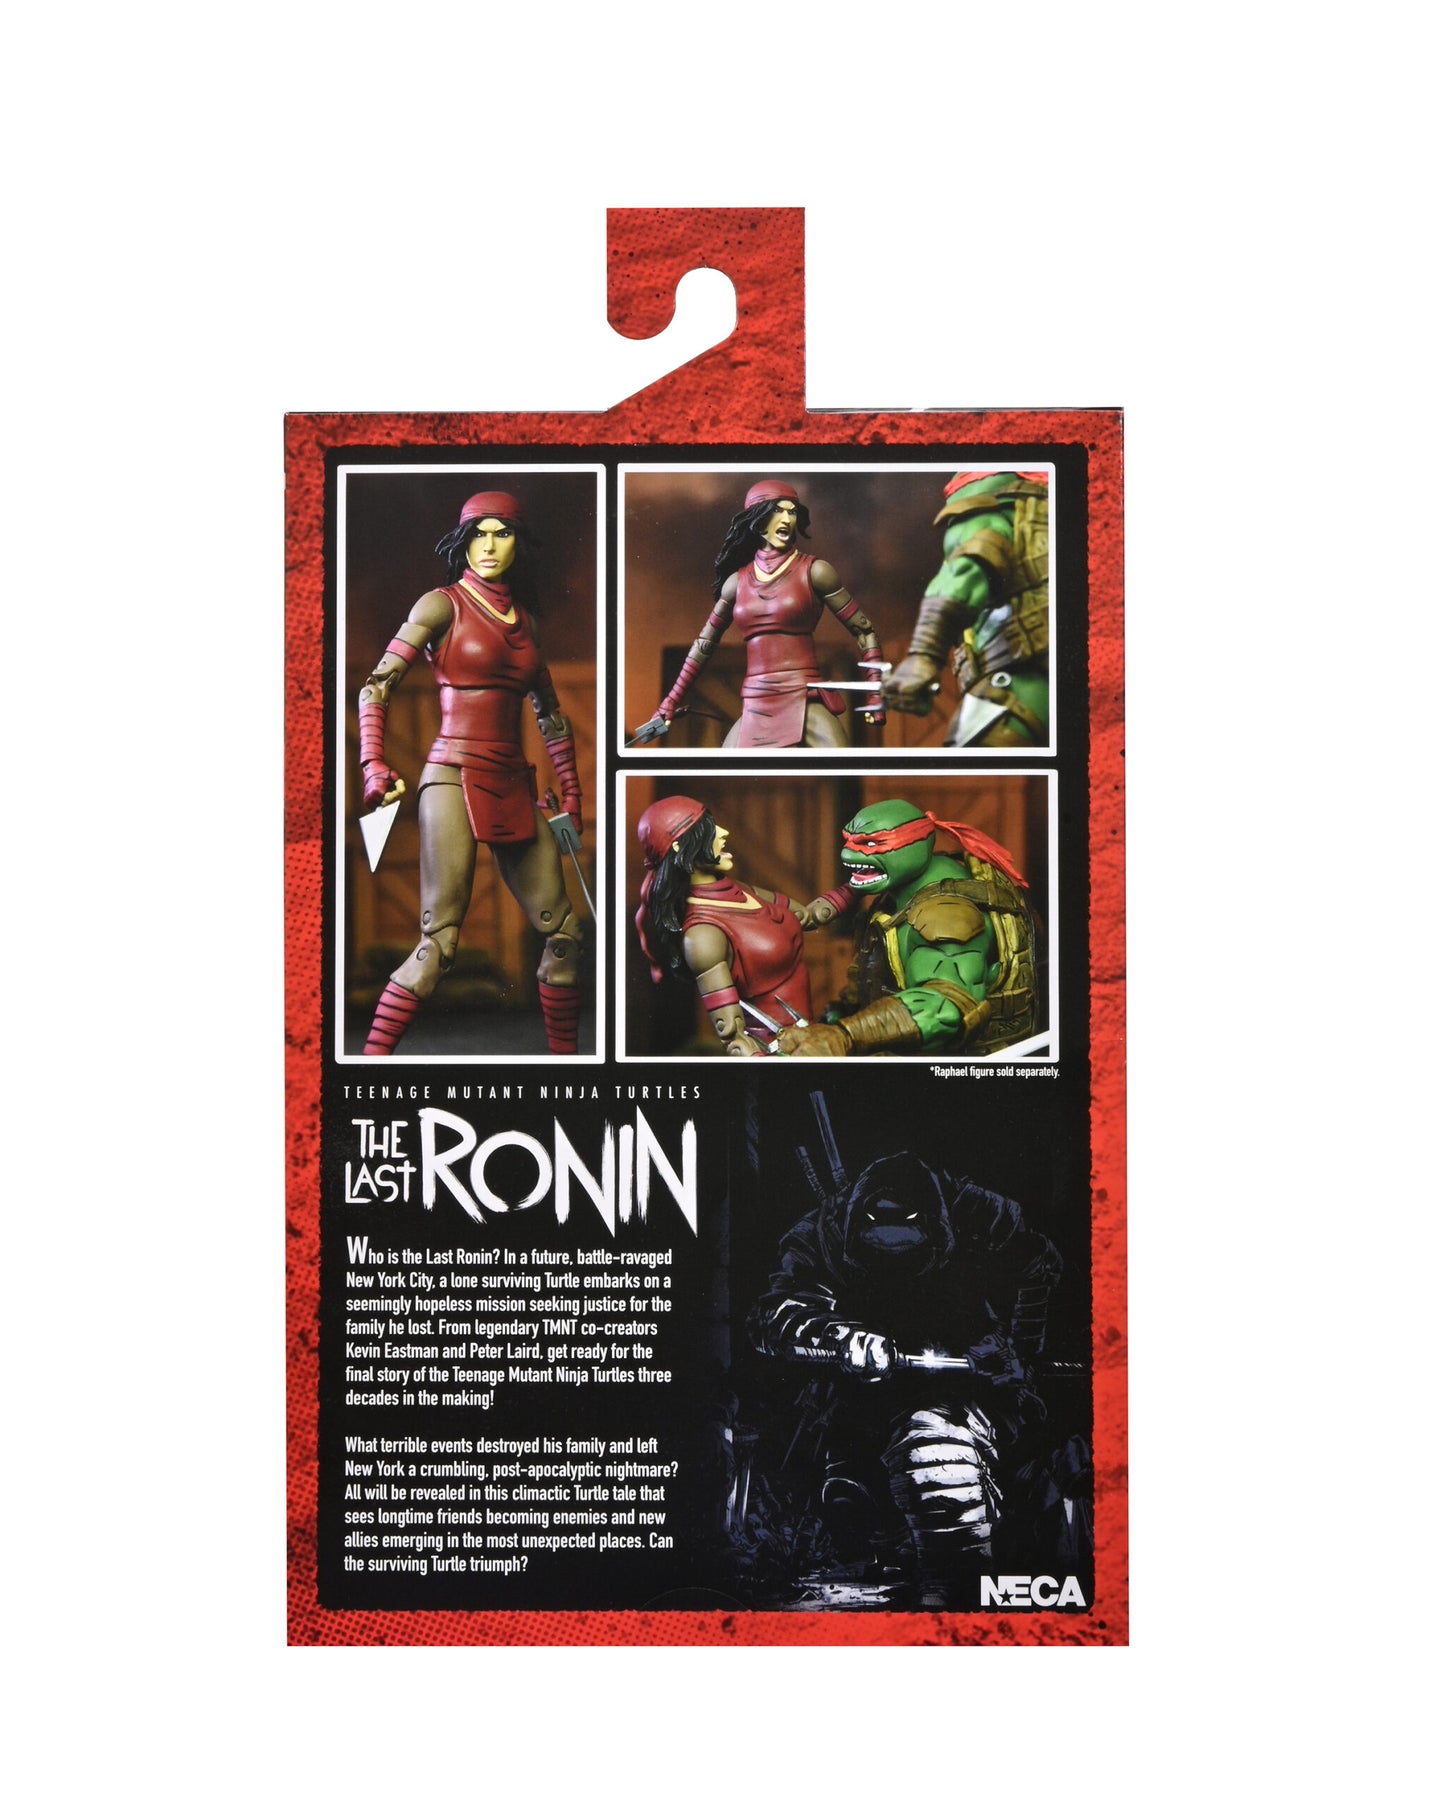 Teenage Mutant Ninja Turtles: The Last Ronin

7” Scale Action Figure – Ultimate Karai